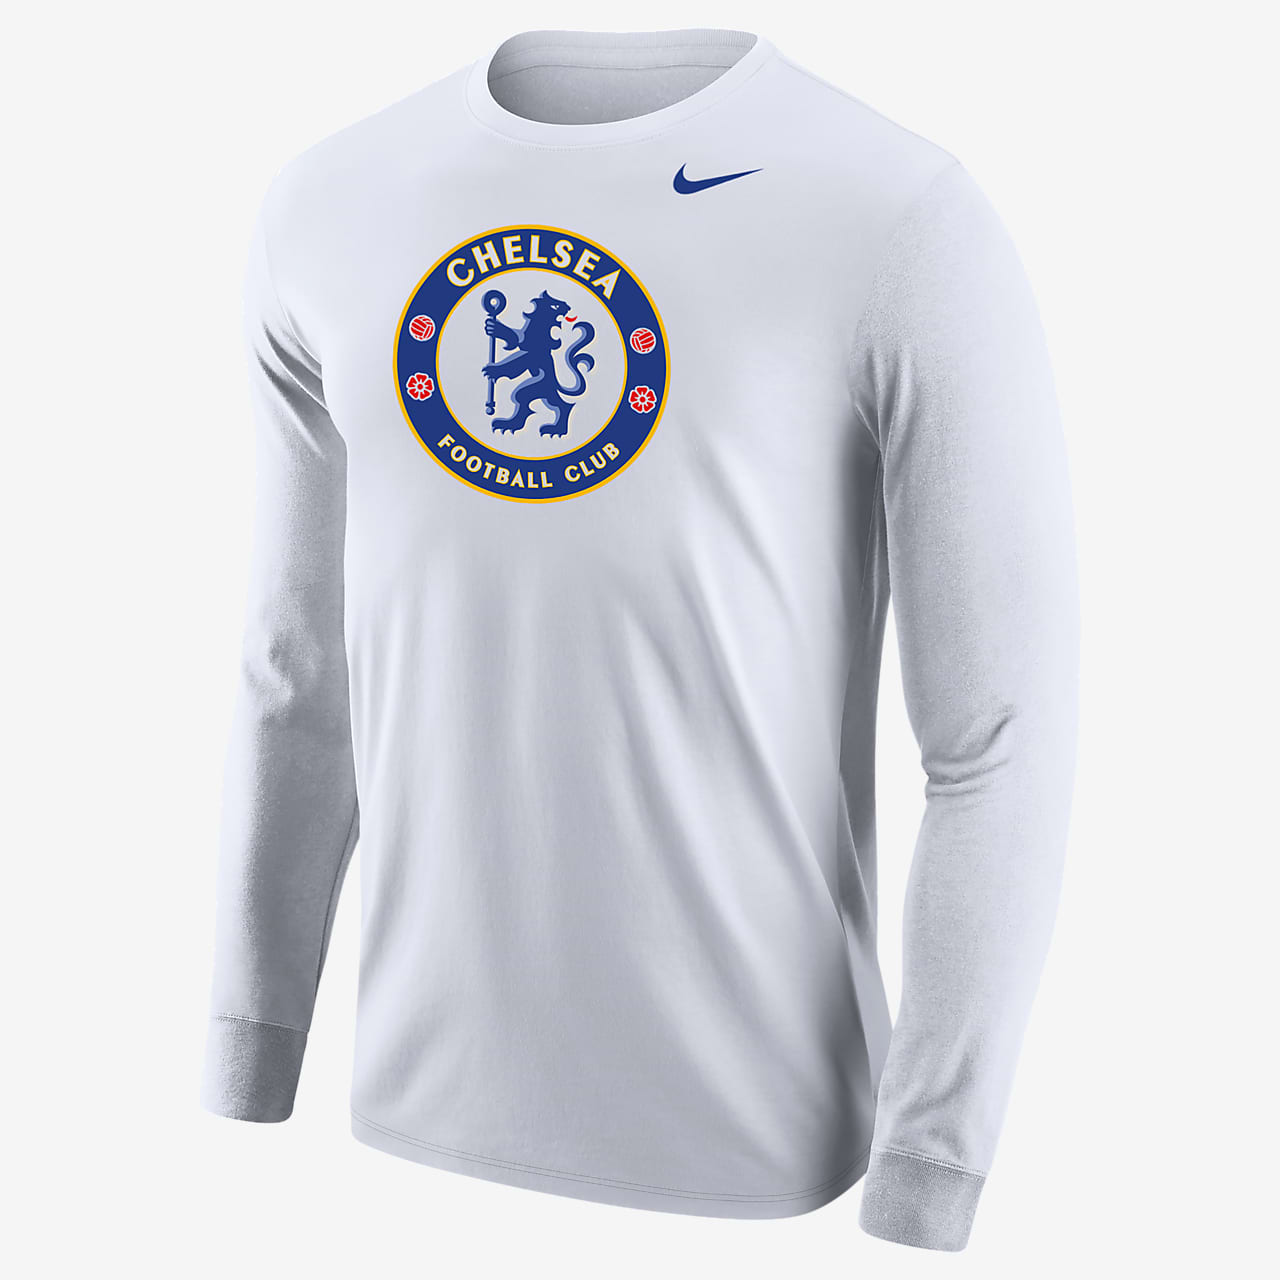 Playera manga larga para Chelsea. Nike.com